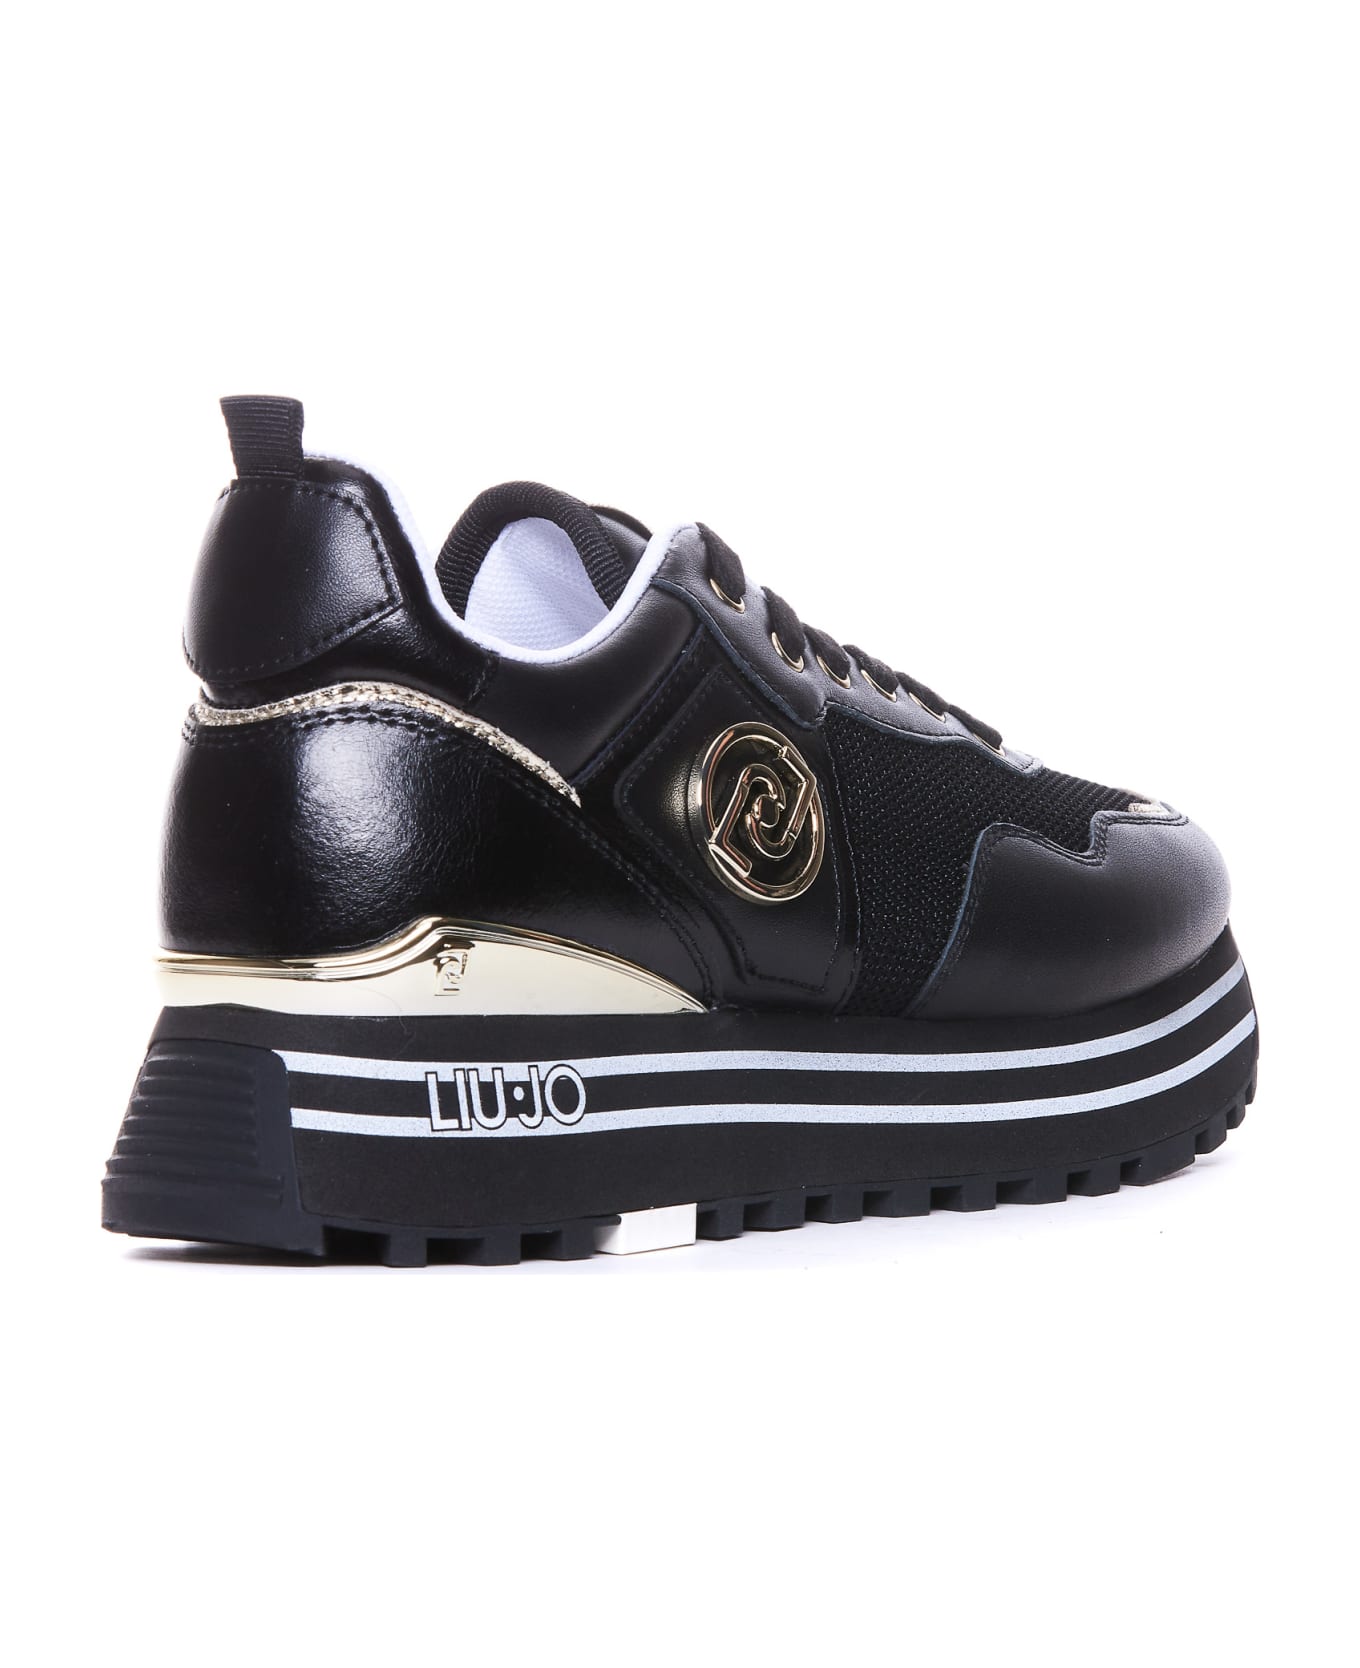 Liu-Jo Maxi Wander Sneakers - Black